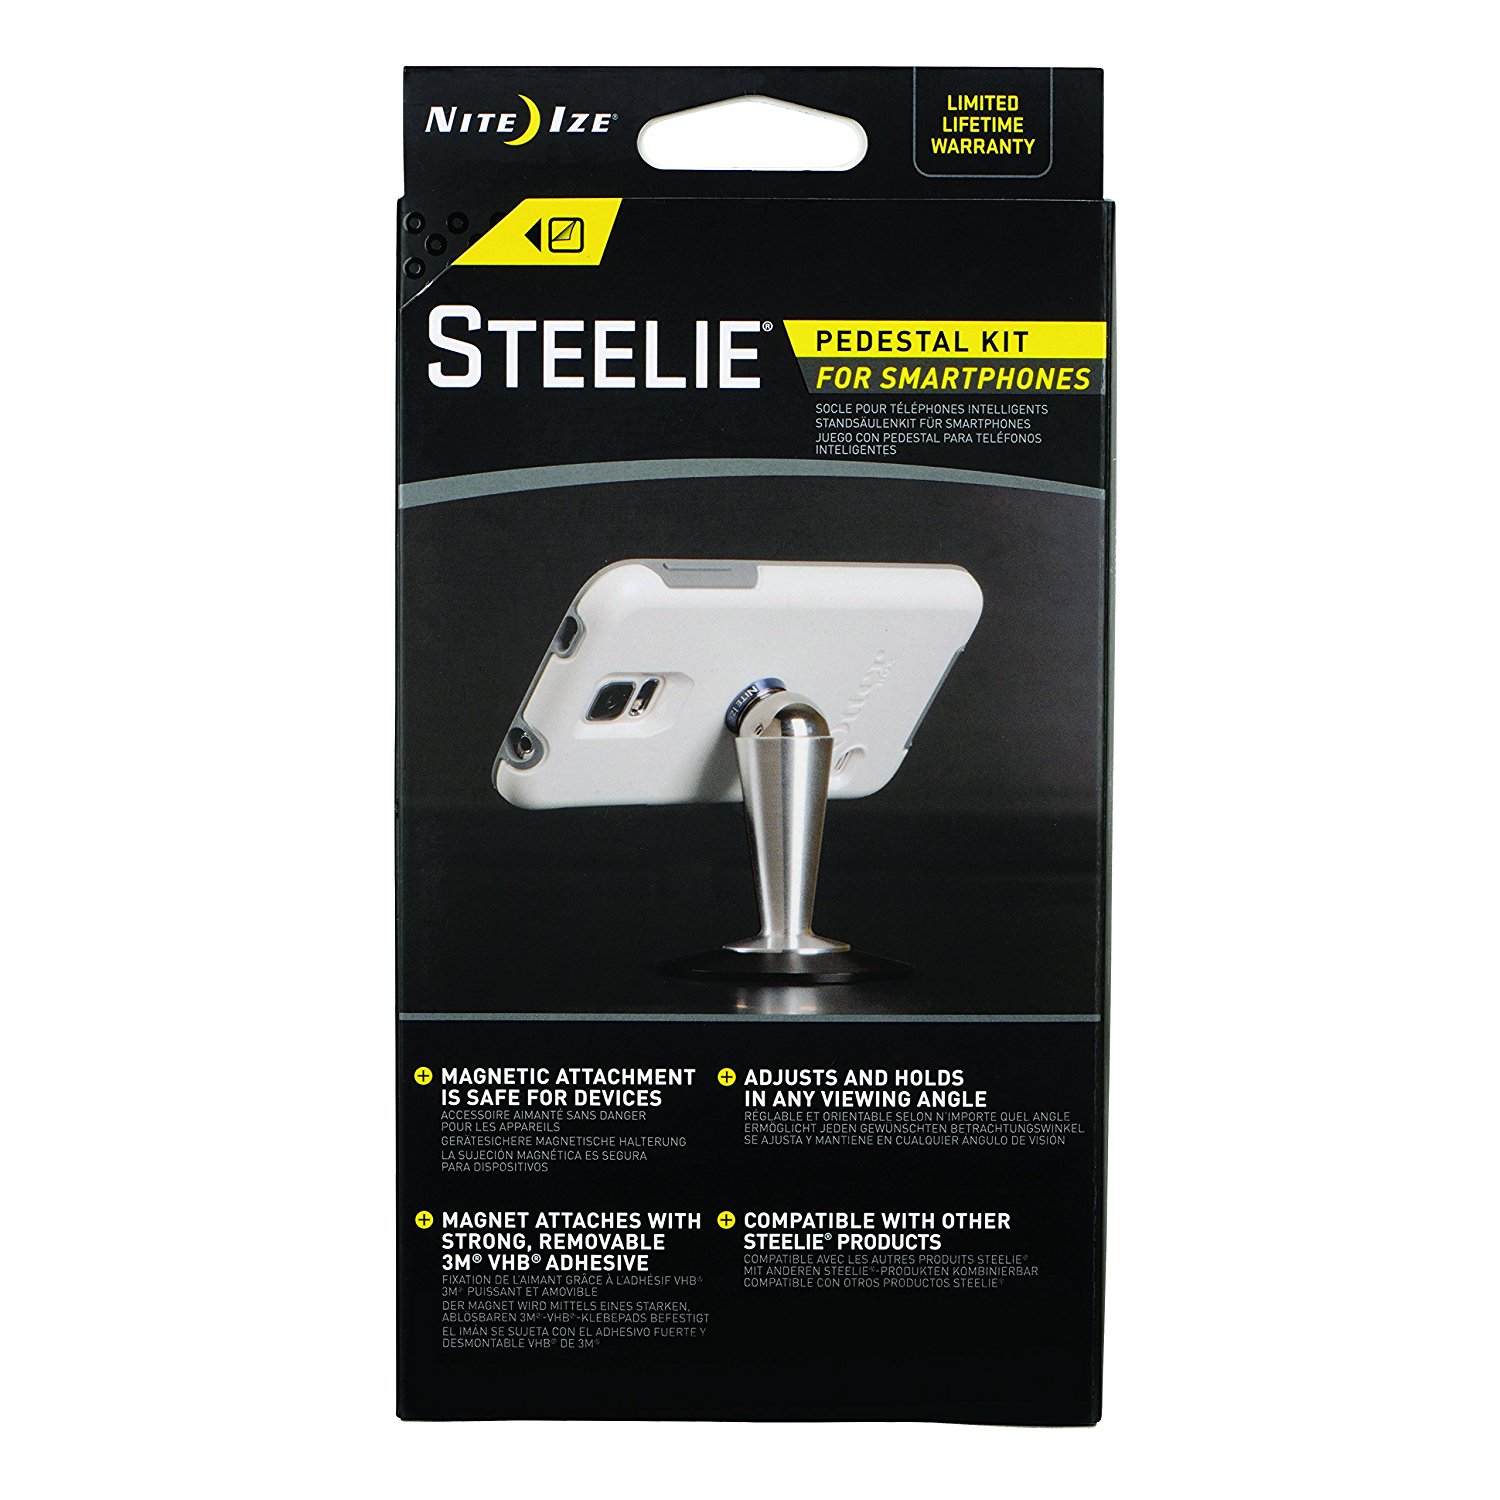 Nite Ize Steelie Pedestal Kit For Smart Phones STMPK11R8 Silver